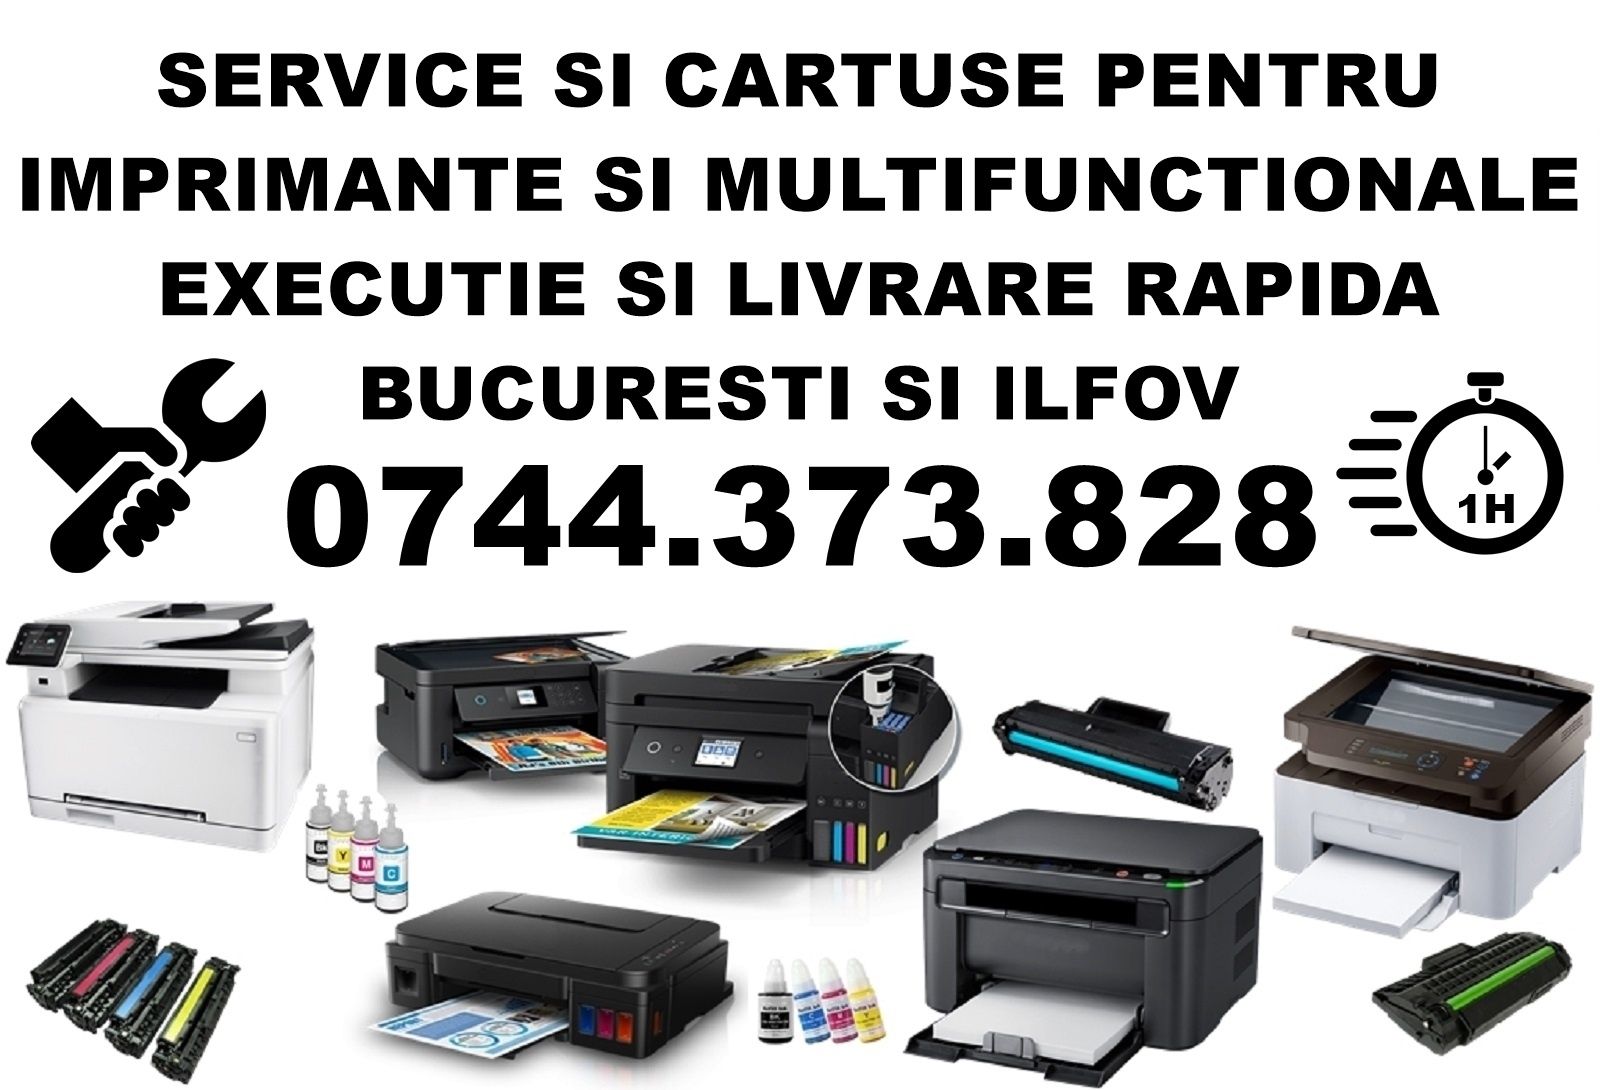 Reincarcare cartuse, reparatii imprimante Bucuresti, Ilfov. Service